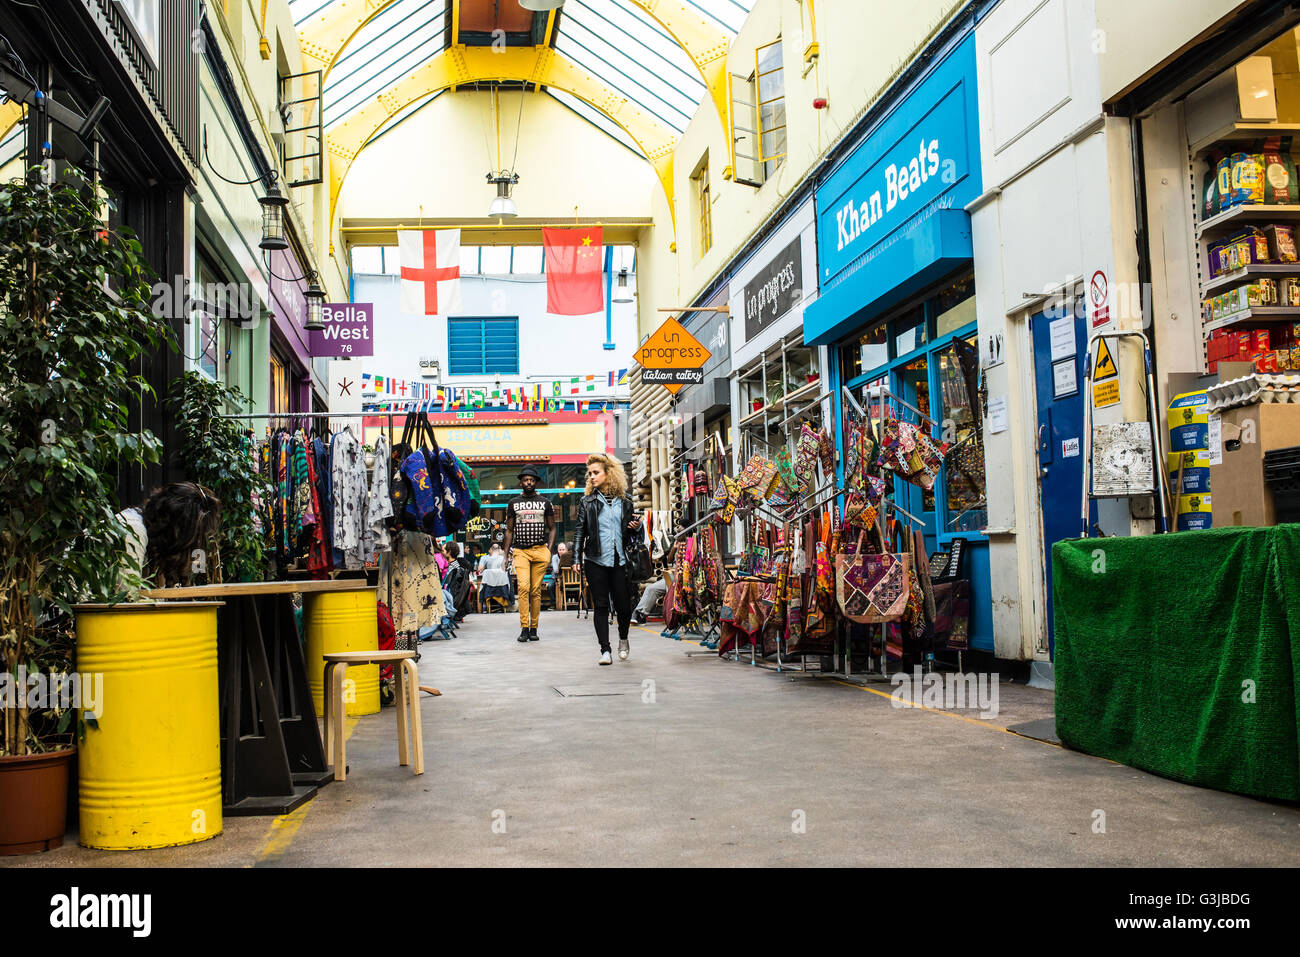 Menschen beim Einkaufen in der indoor Brixton Village Market, eine multikulturelle Gemeinschaftsmarkt mit unabhängigen Geschäften und restaurants Stockfoto